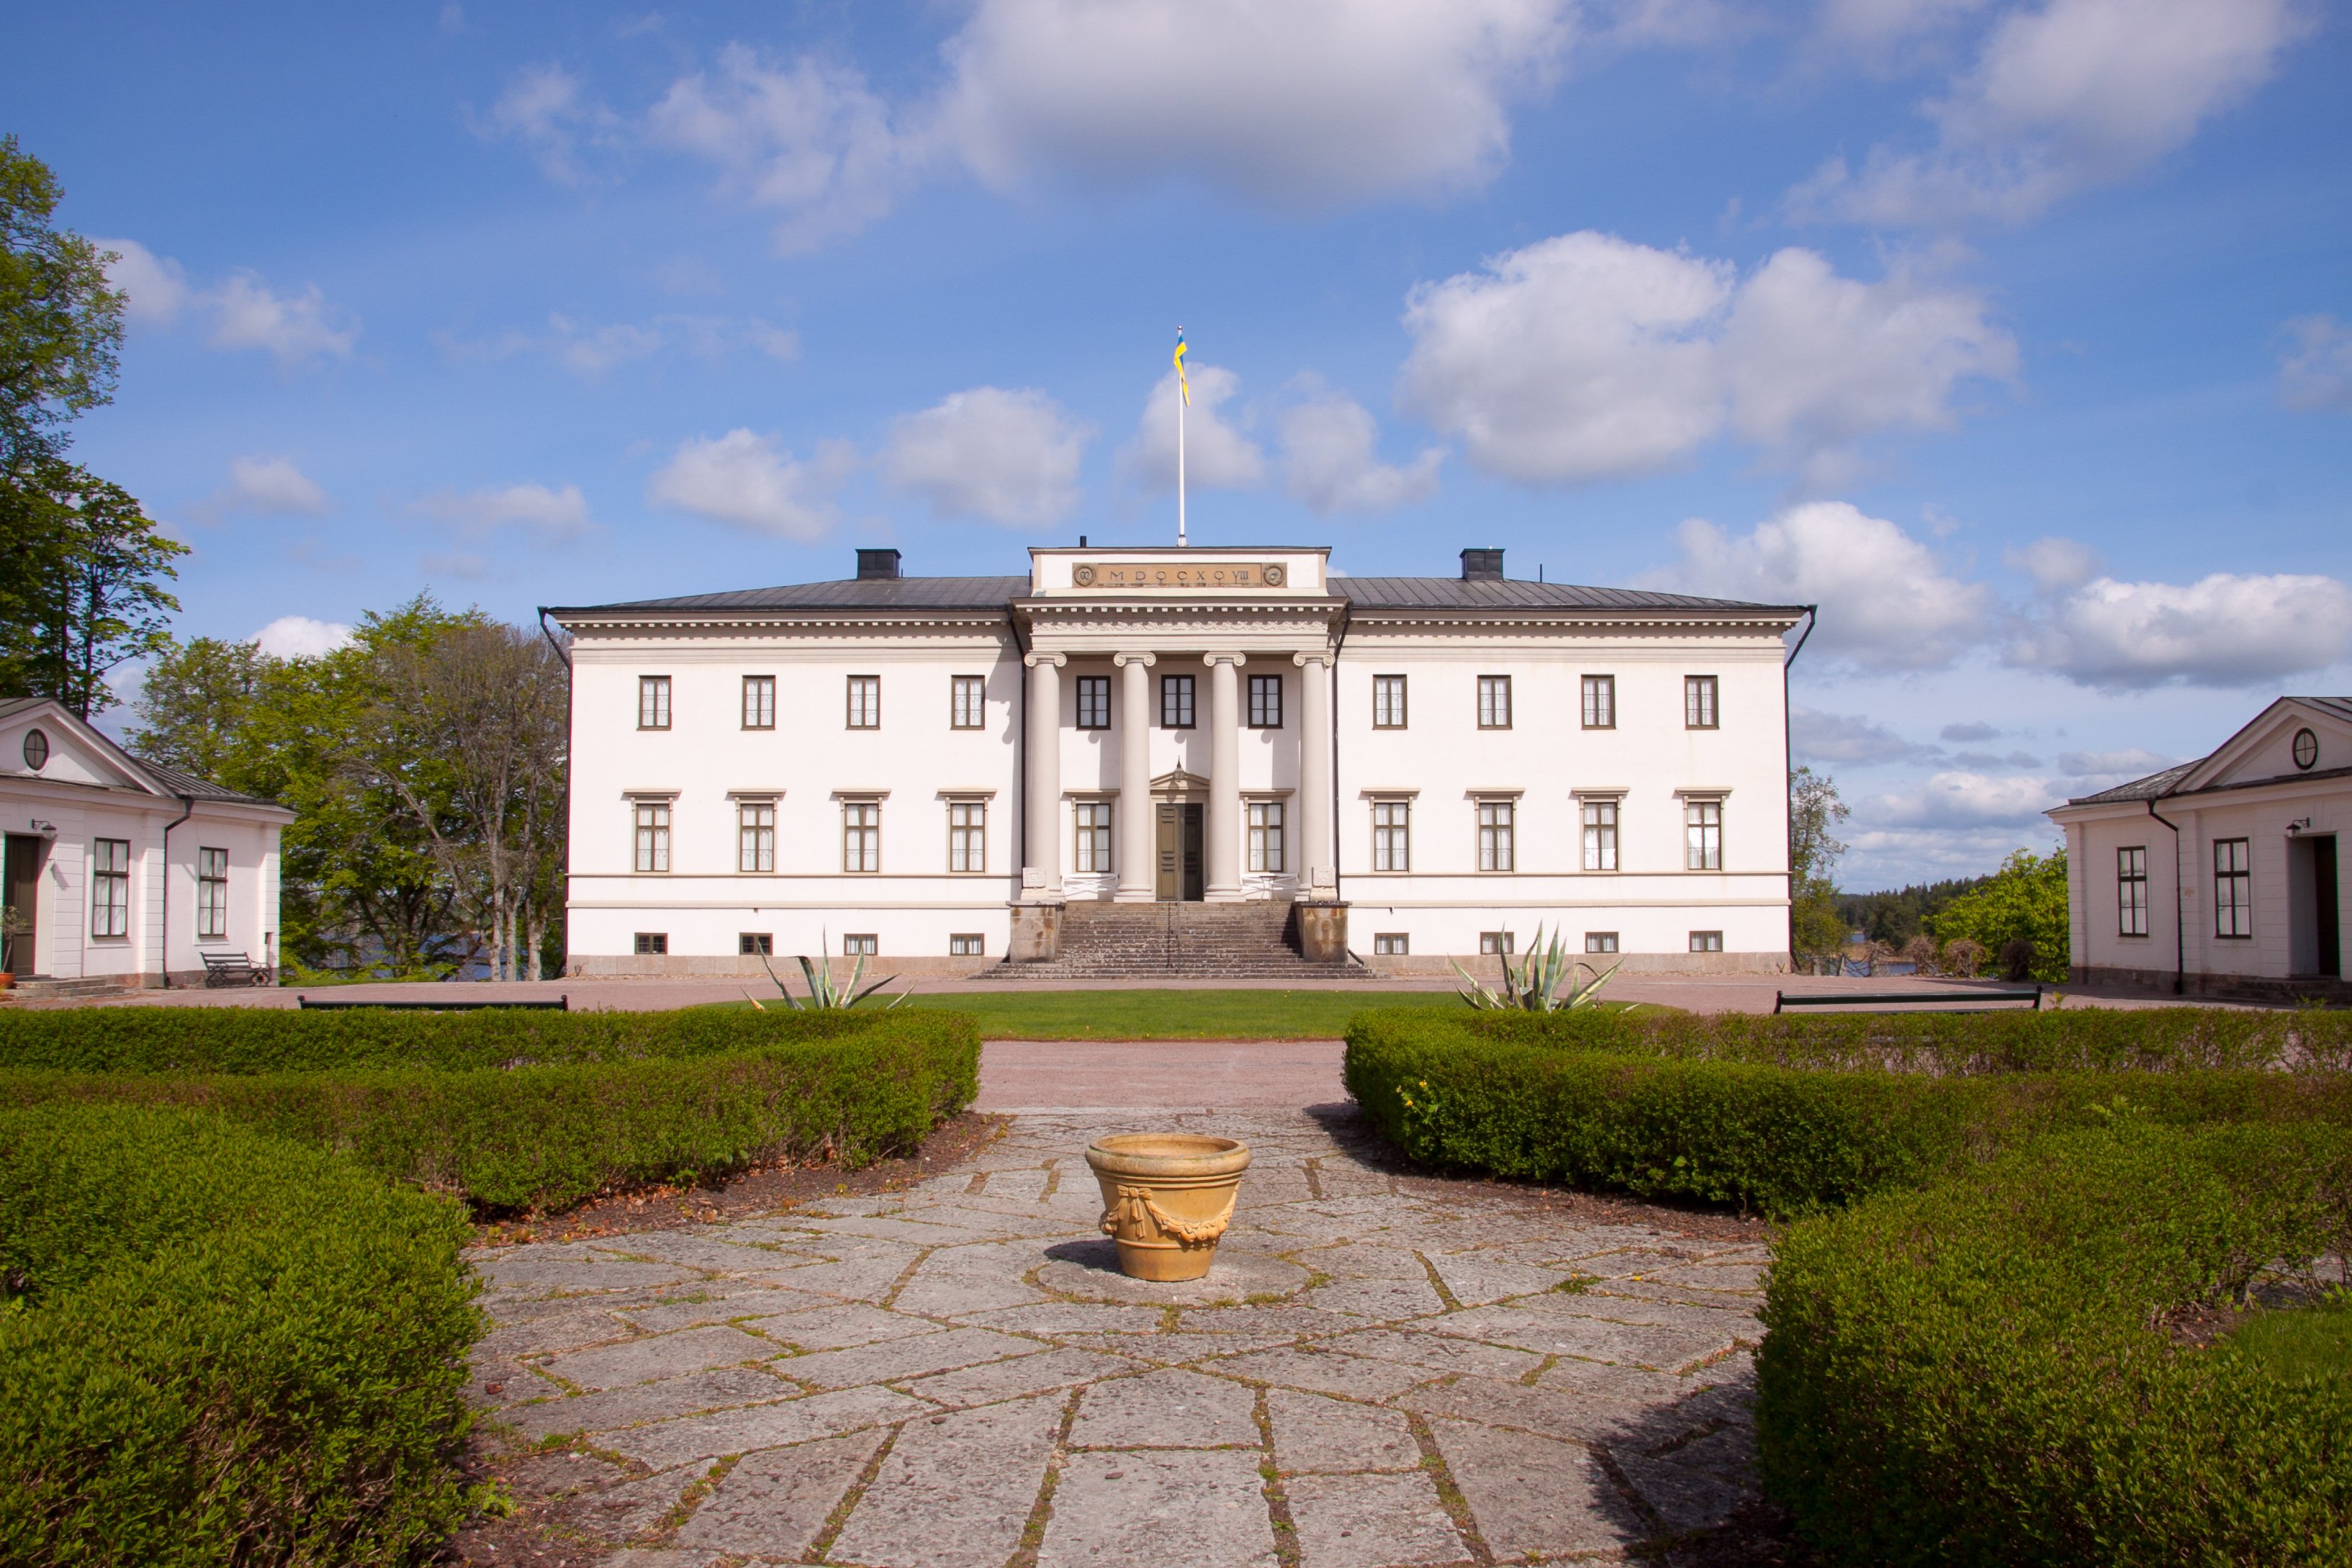 Stjernsunds slott och borggård